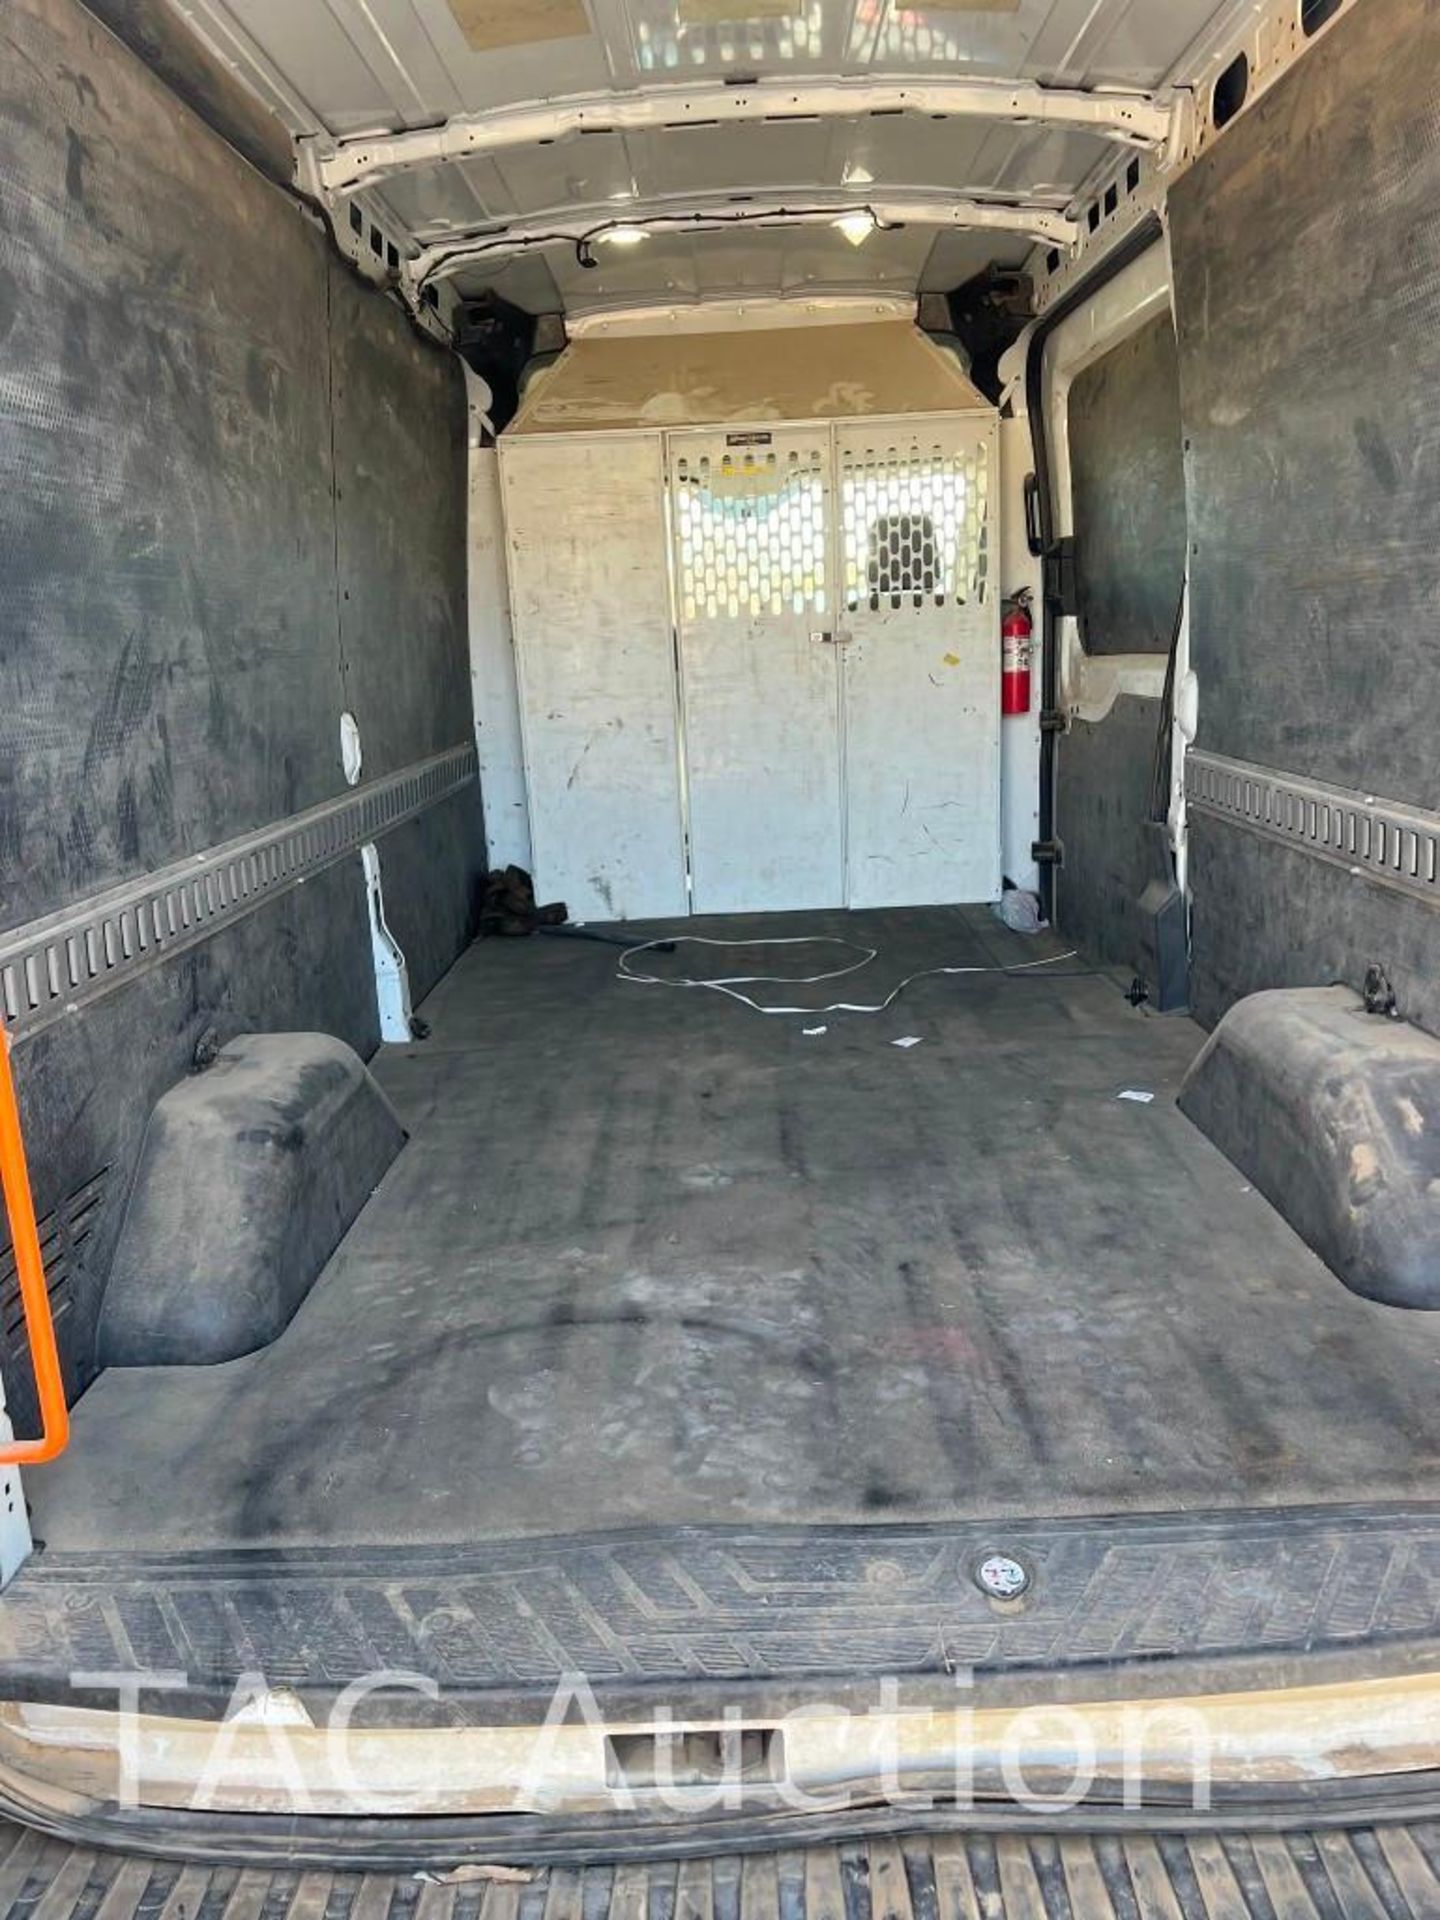 2019 Ford Transit 150 Cargo Van - Image 7 of 22